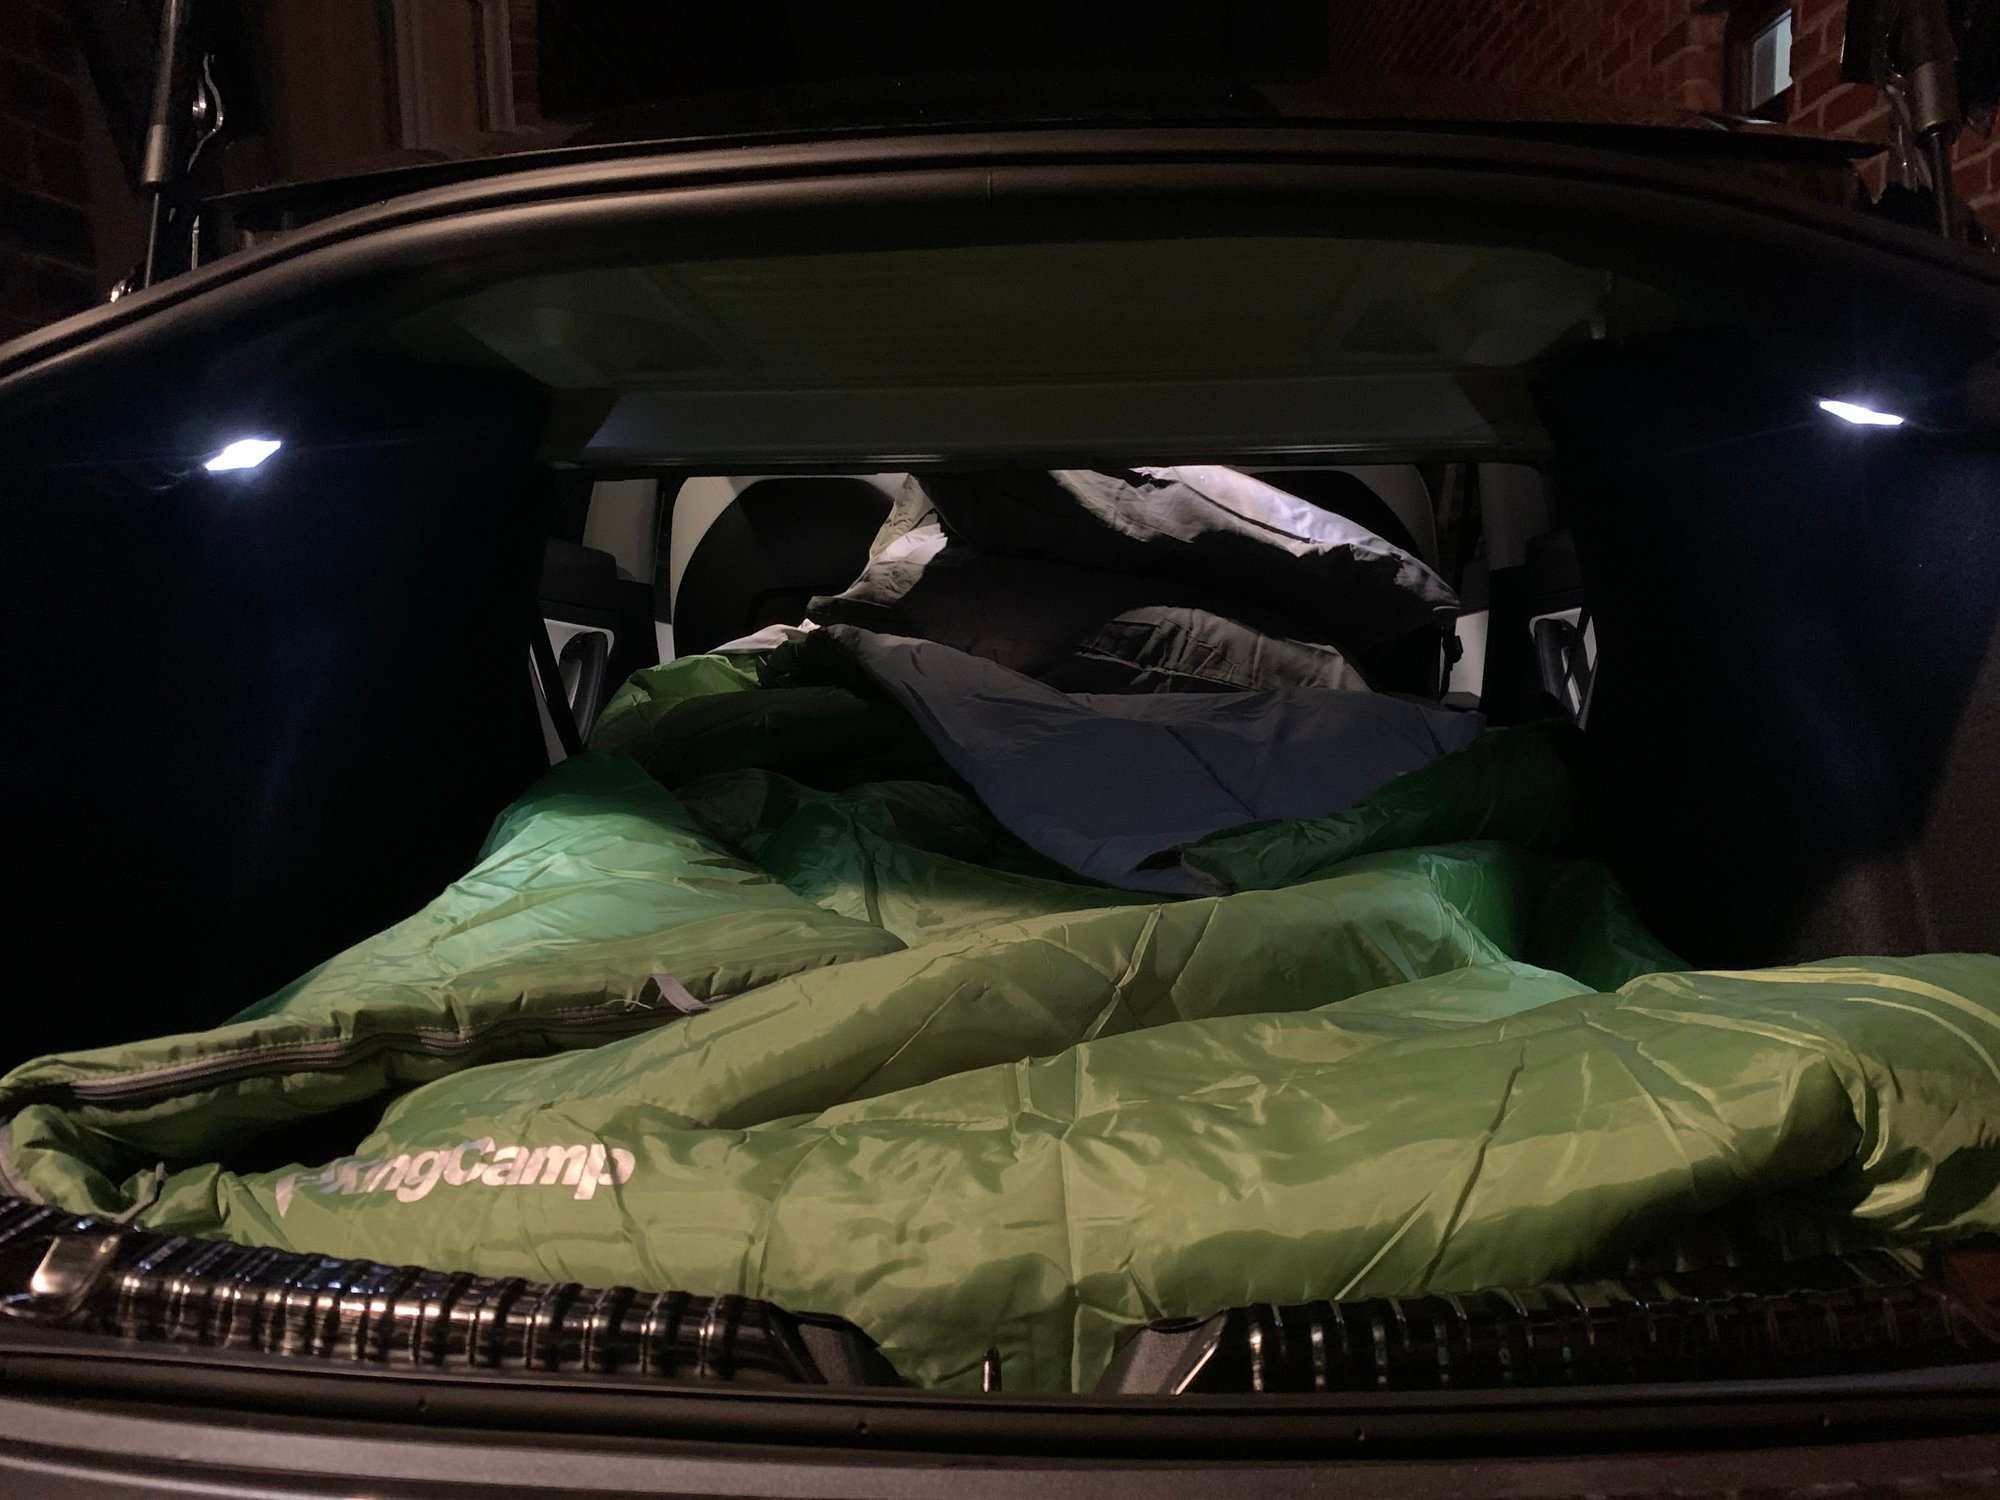 Matelas pour dormir dans la Model 3 - Tesla Model 3 - Forum Automobile  Propre